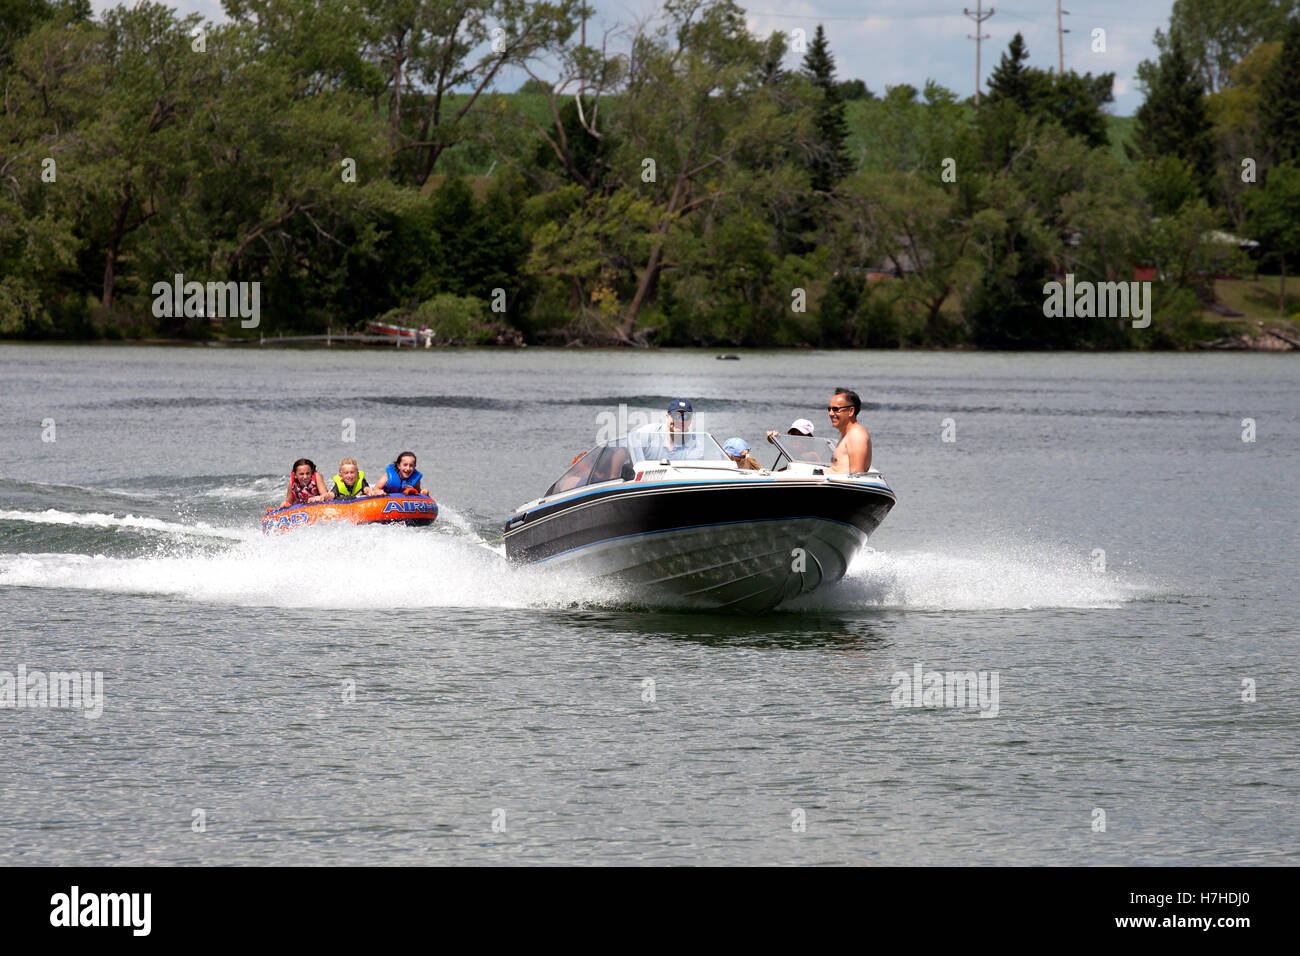 Les parents de retirer leurs enfants sur un tube à eau avec bateau de vitesse sur un lac. Clitherall Minnesota MN USA Banque D'Images